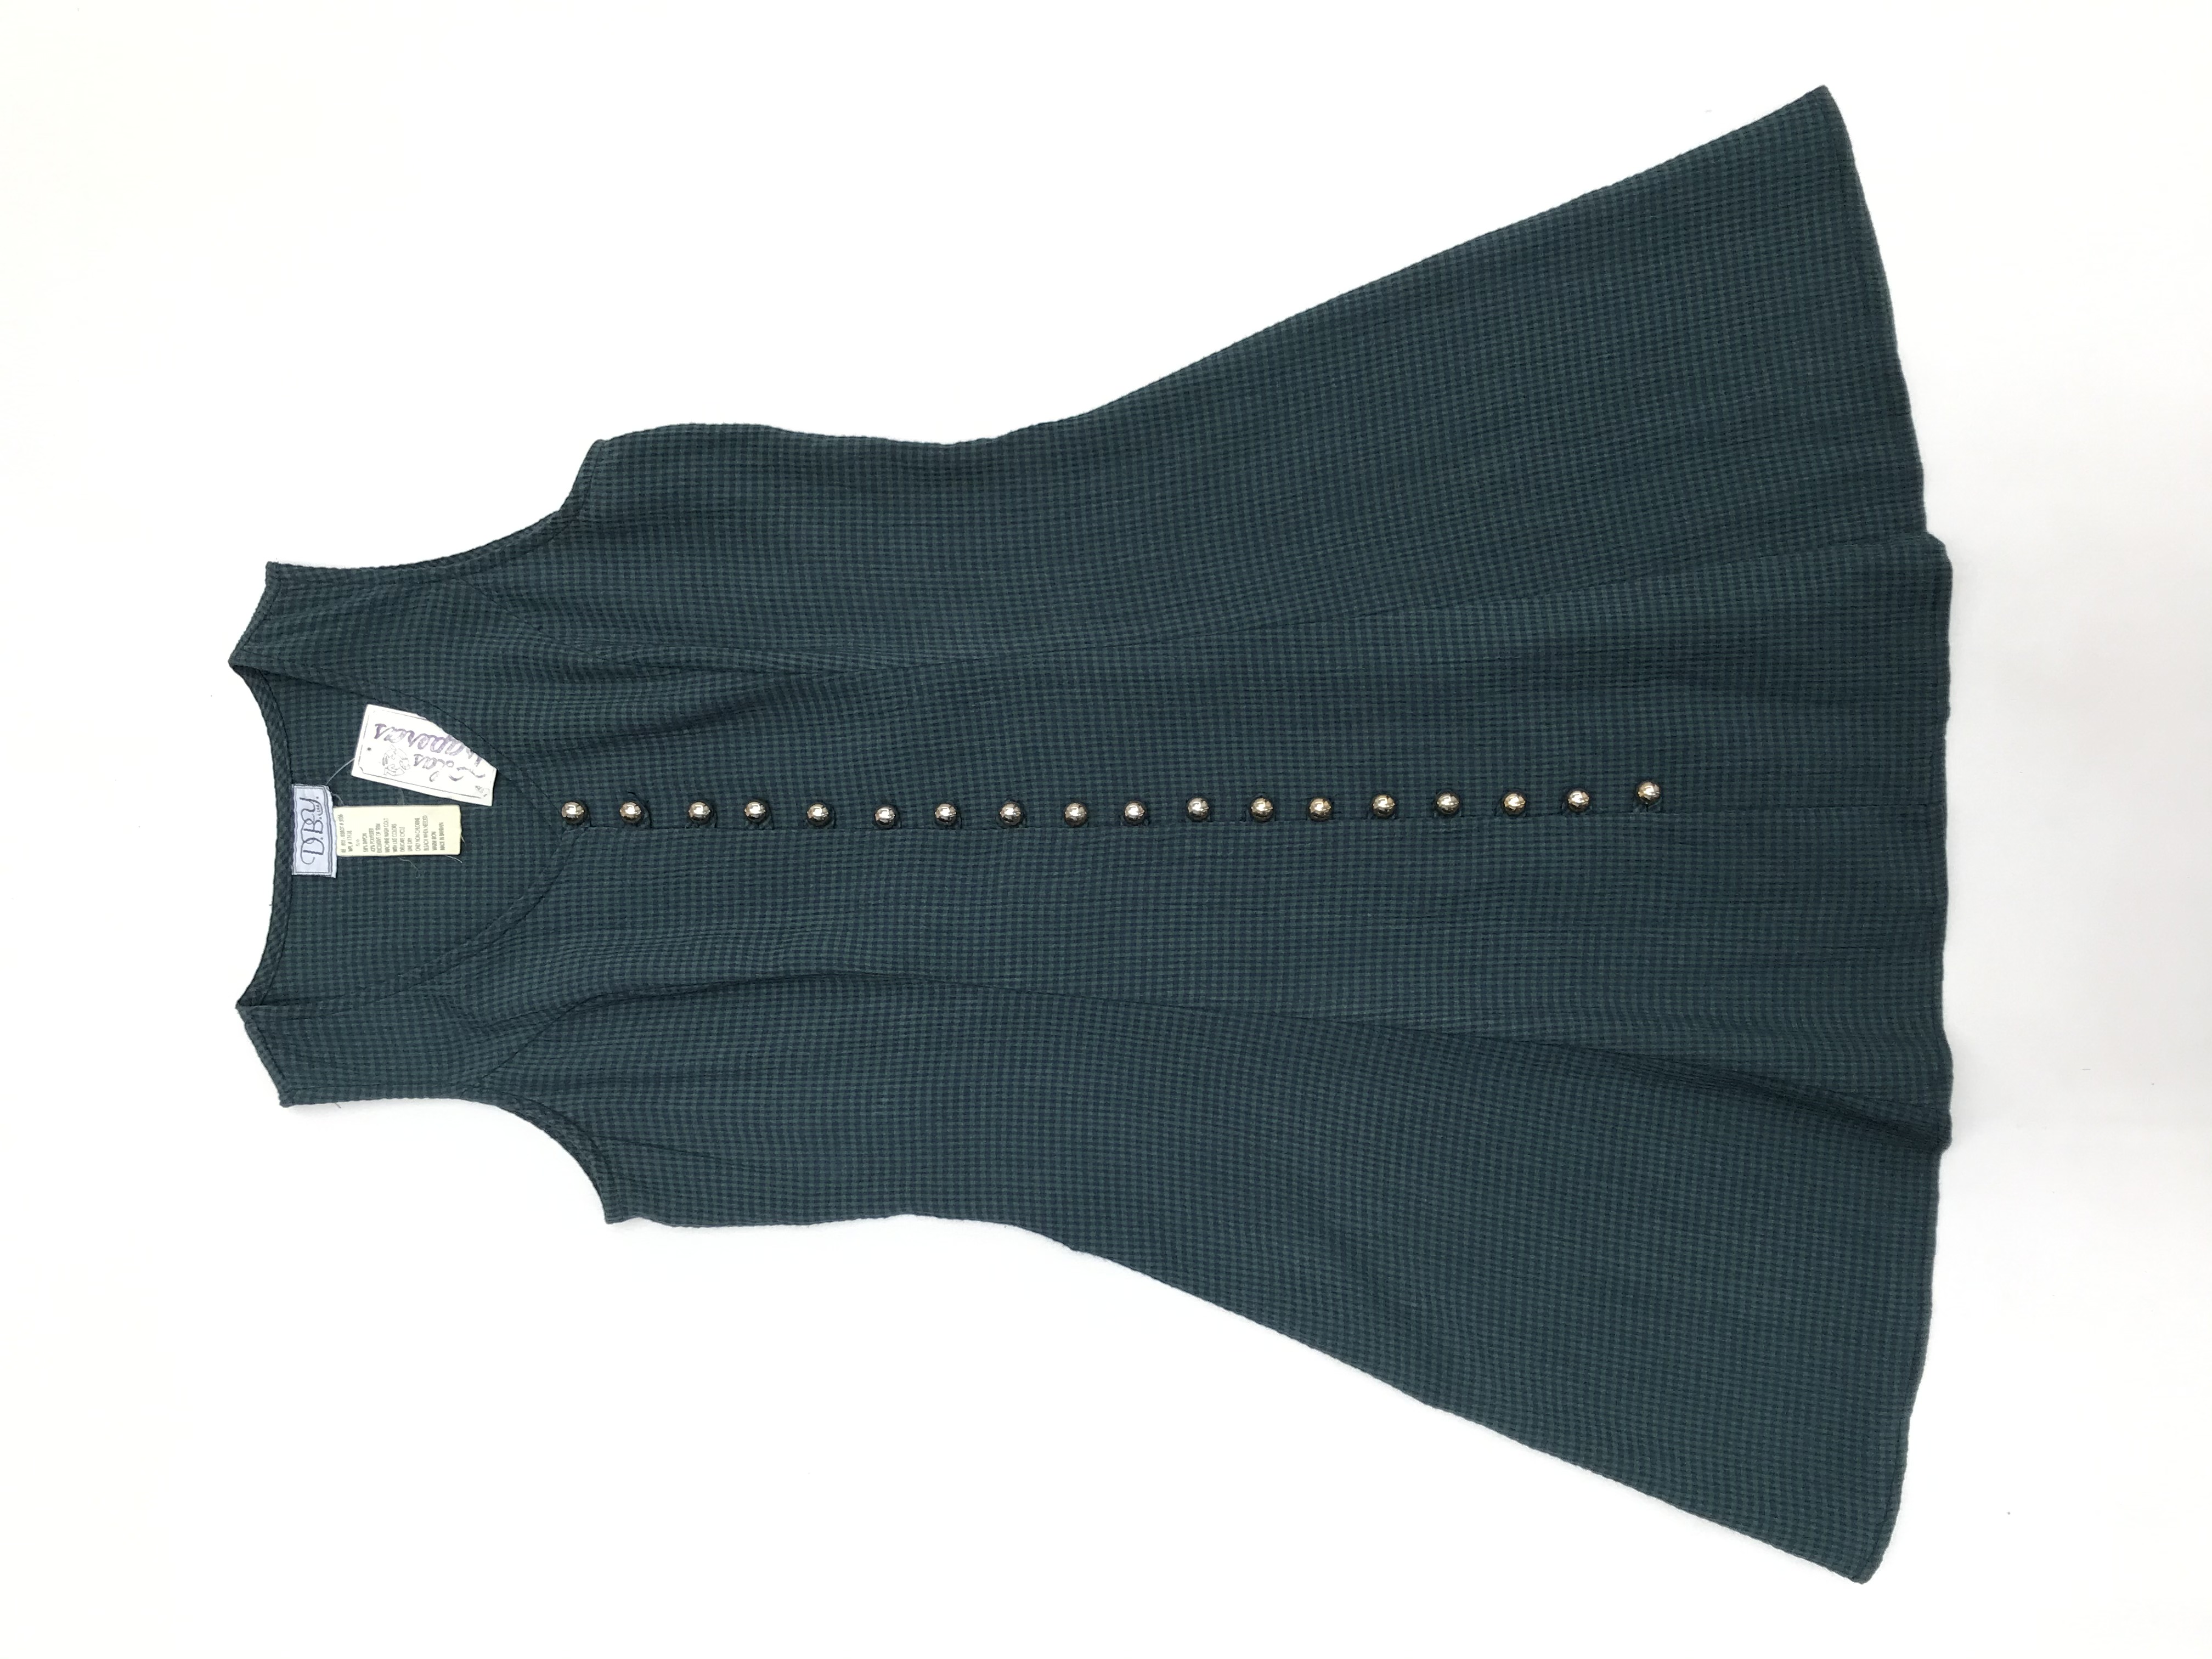 Vestido vintage verde con cuadritos azules, fila de botones, pasador en la espalda y falda en A. Largo 84cm